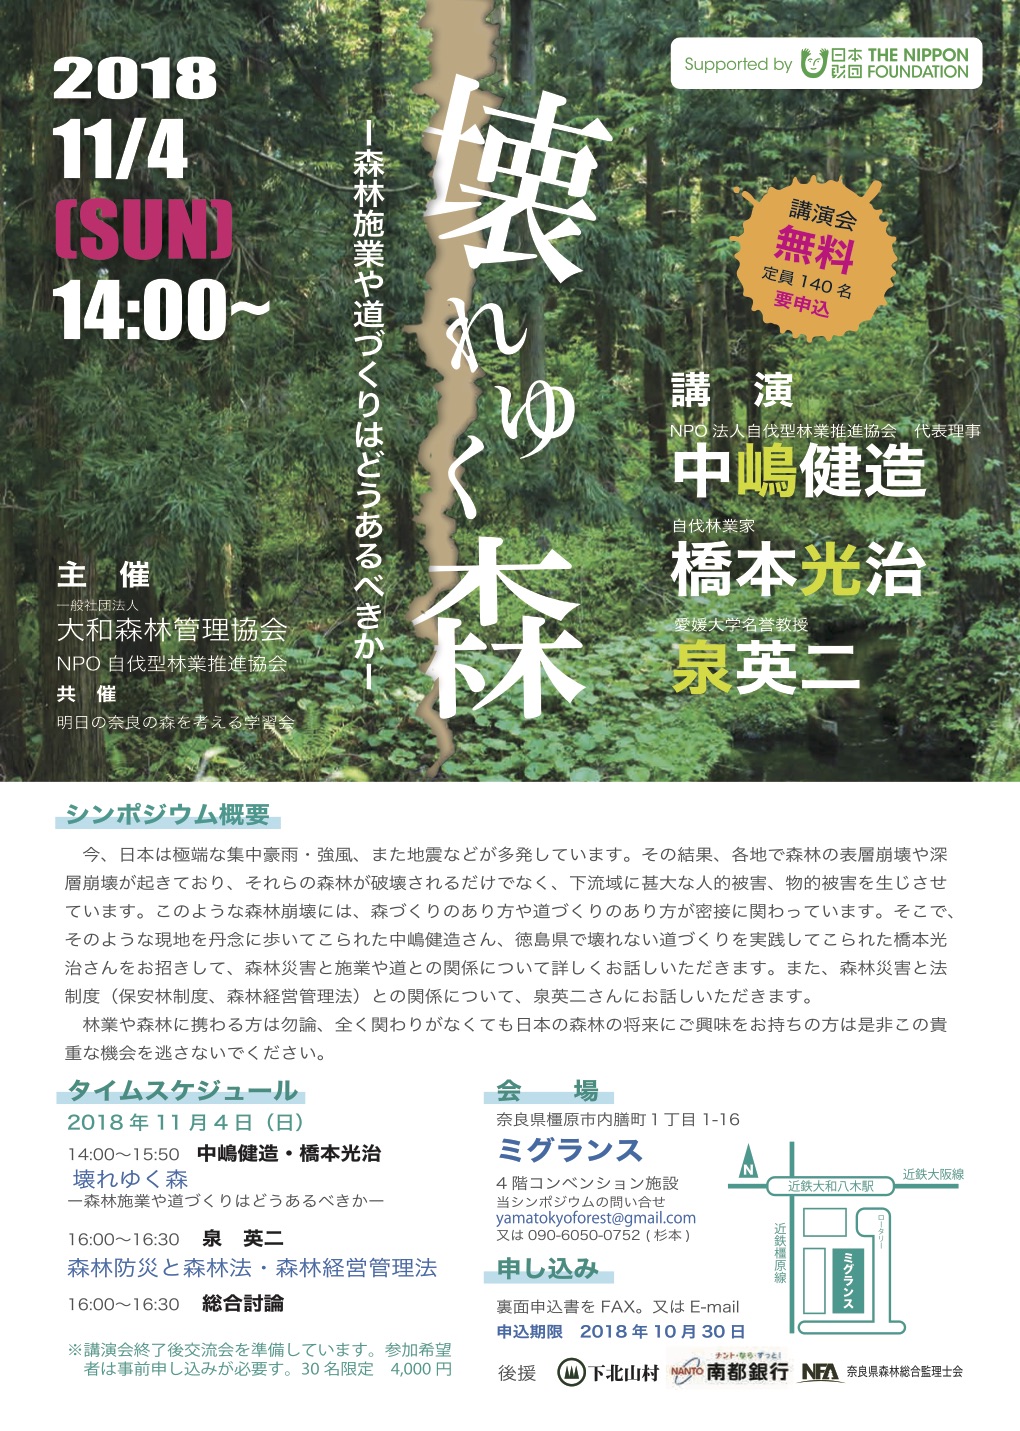 11月4日に奈良県で「壊れゆく森」が開催されます。